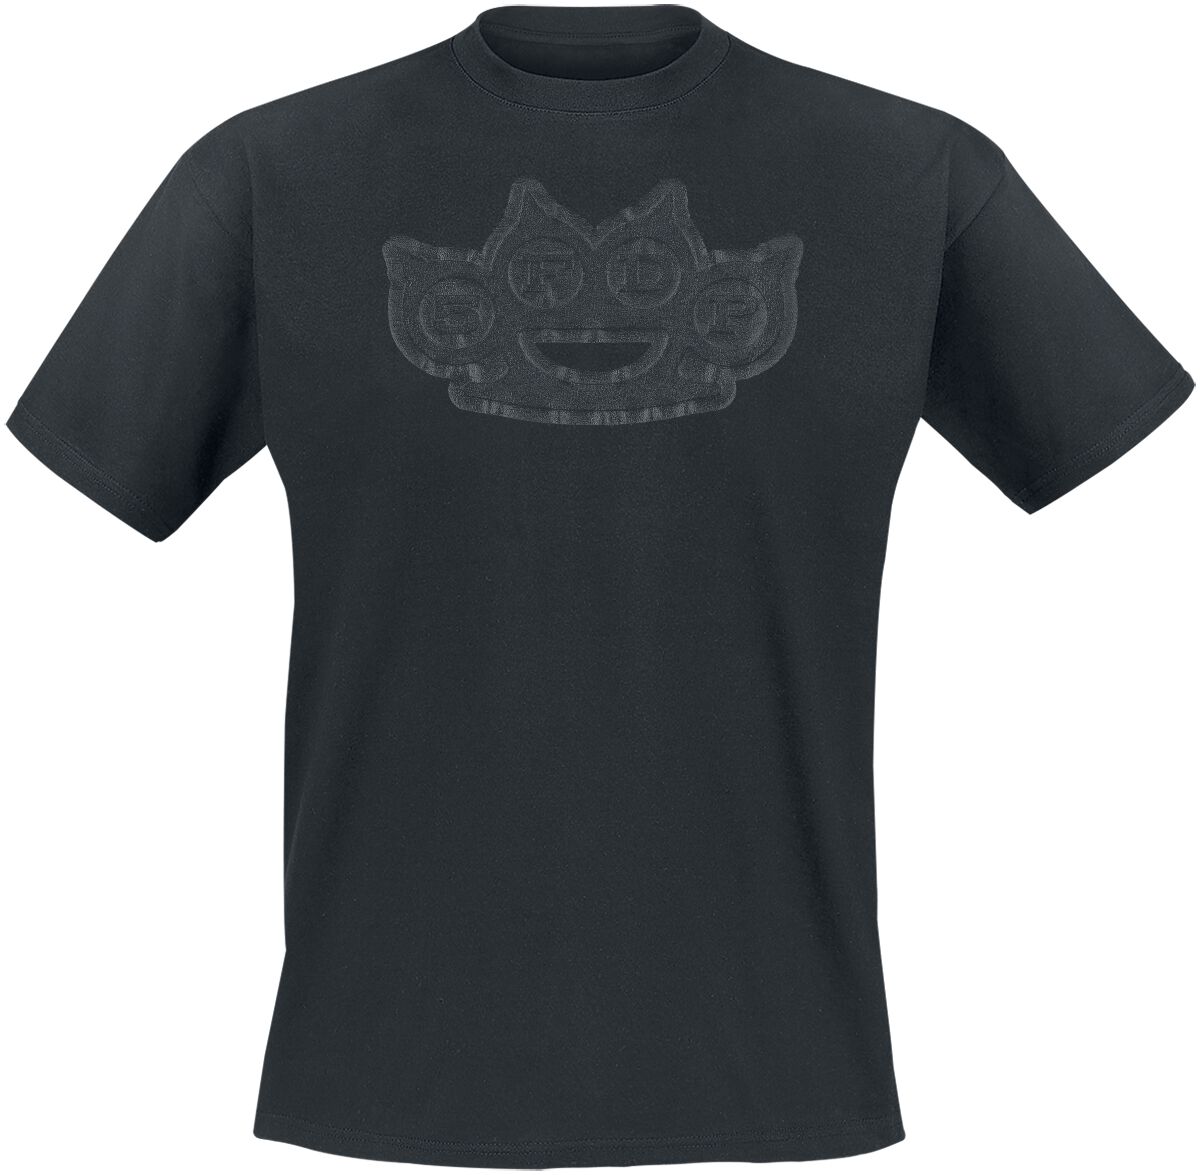 Five Finger Death Punch T-Shirt - Black On Black Knuckles - S bis 4XL - für Männer - Größe S - schwarz  - Lizenziertes Merchandise!